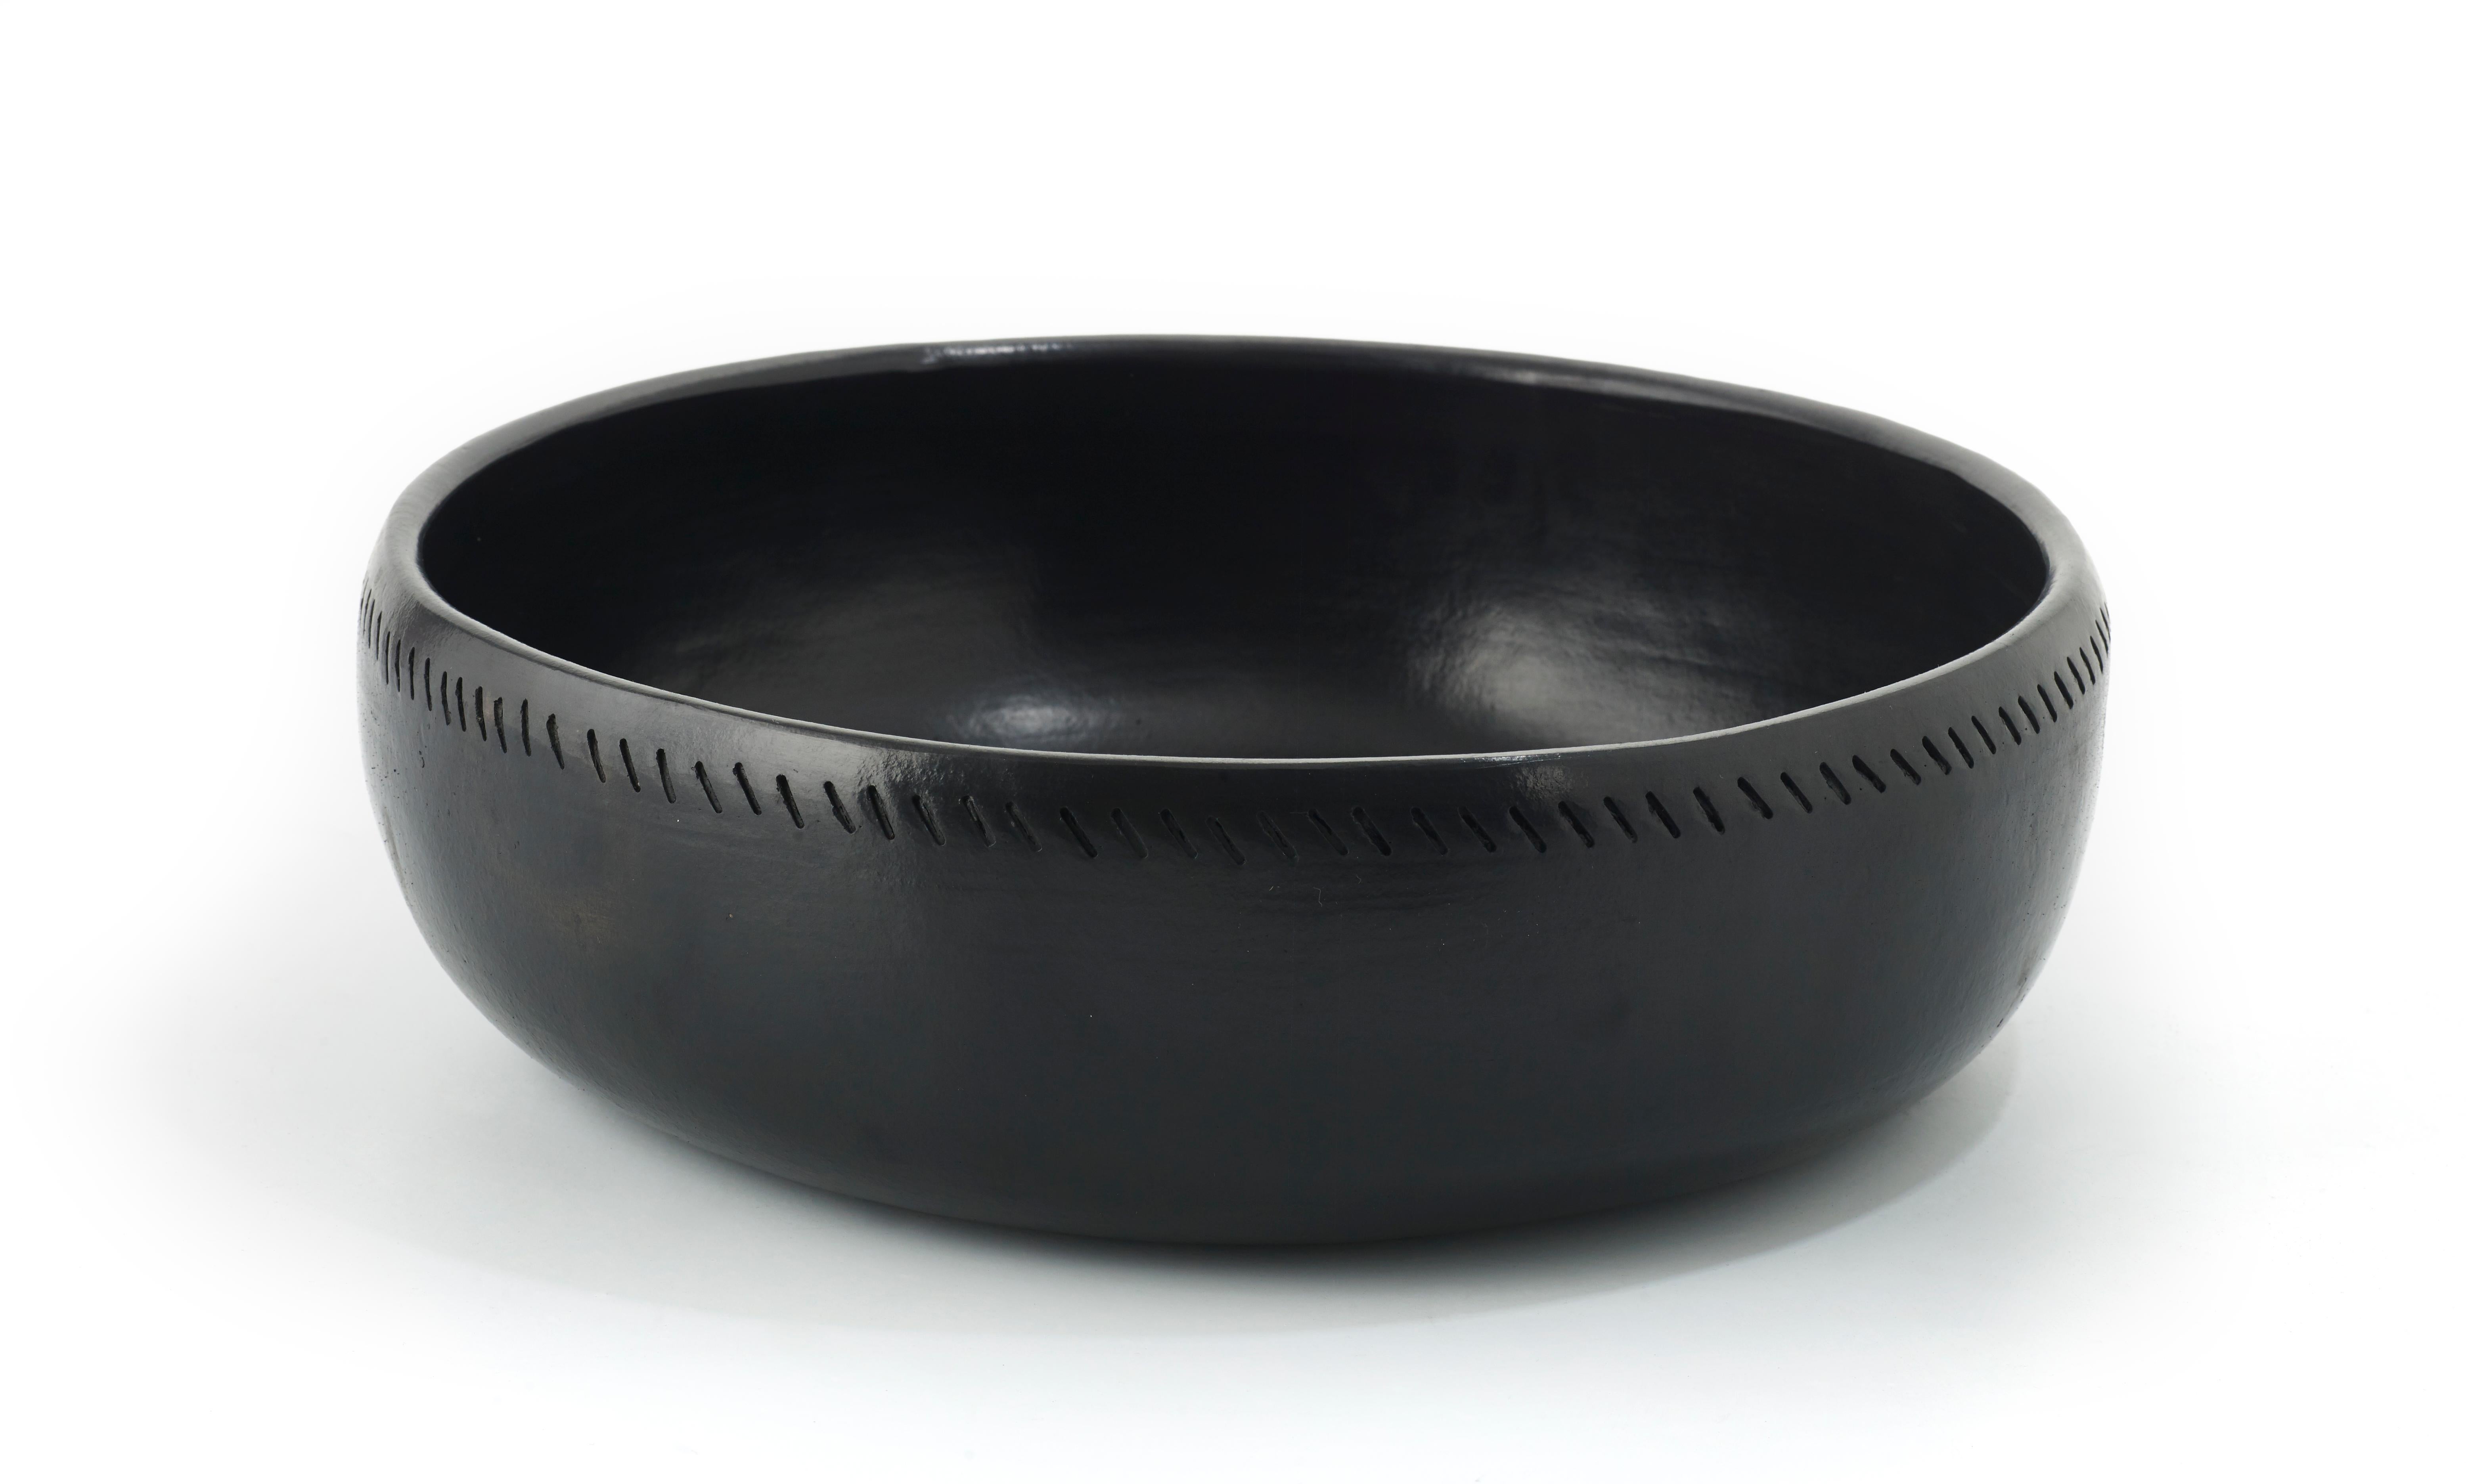 Große Schale barro dining von Sebastian Herkner
MATERIALIEN: Hitzebeständige schwarze Keramik. 
Technik: Glasiert. Im Ofen gegart und mit Halbedelsteinen poliert. 
Abmessungen: Durchmesser 38 cm x Höhe 12 cm 
Erhältlich in den Größen: Mittel, klein